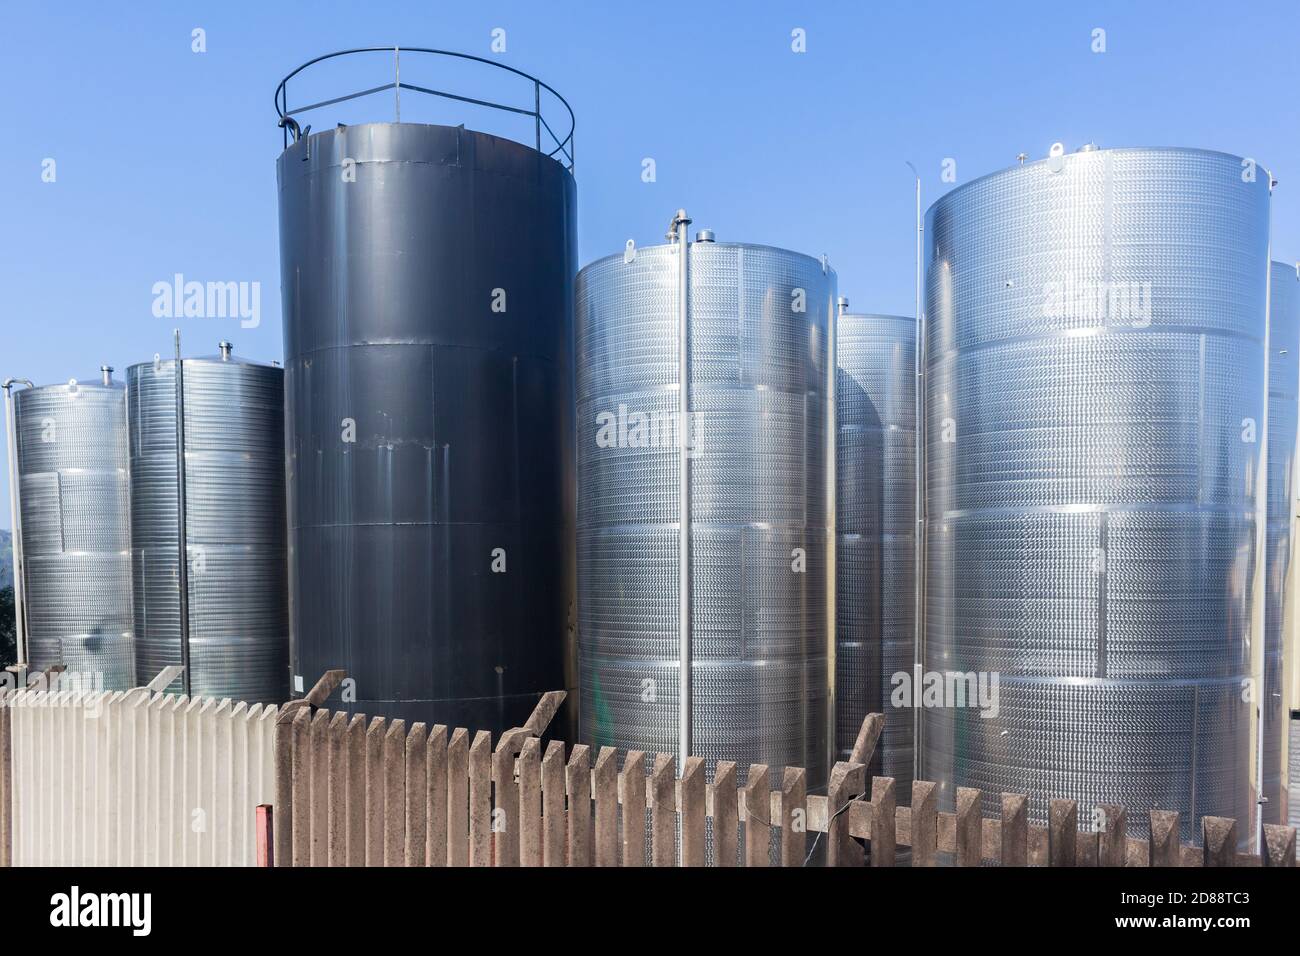 Industria tanques de almacenamiento de acero inoxidable para líquidos químicos industriales cierre foto Foto de stock